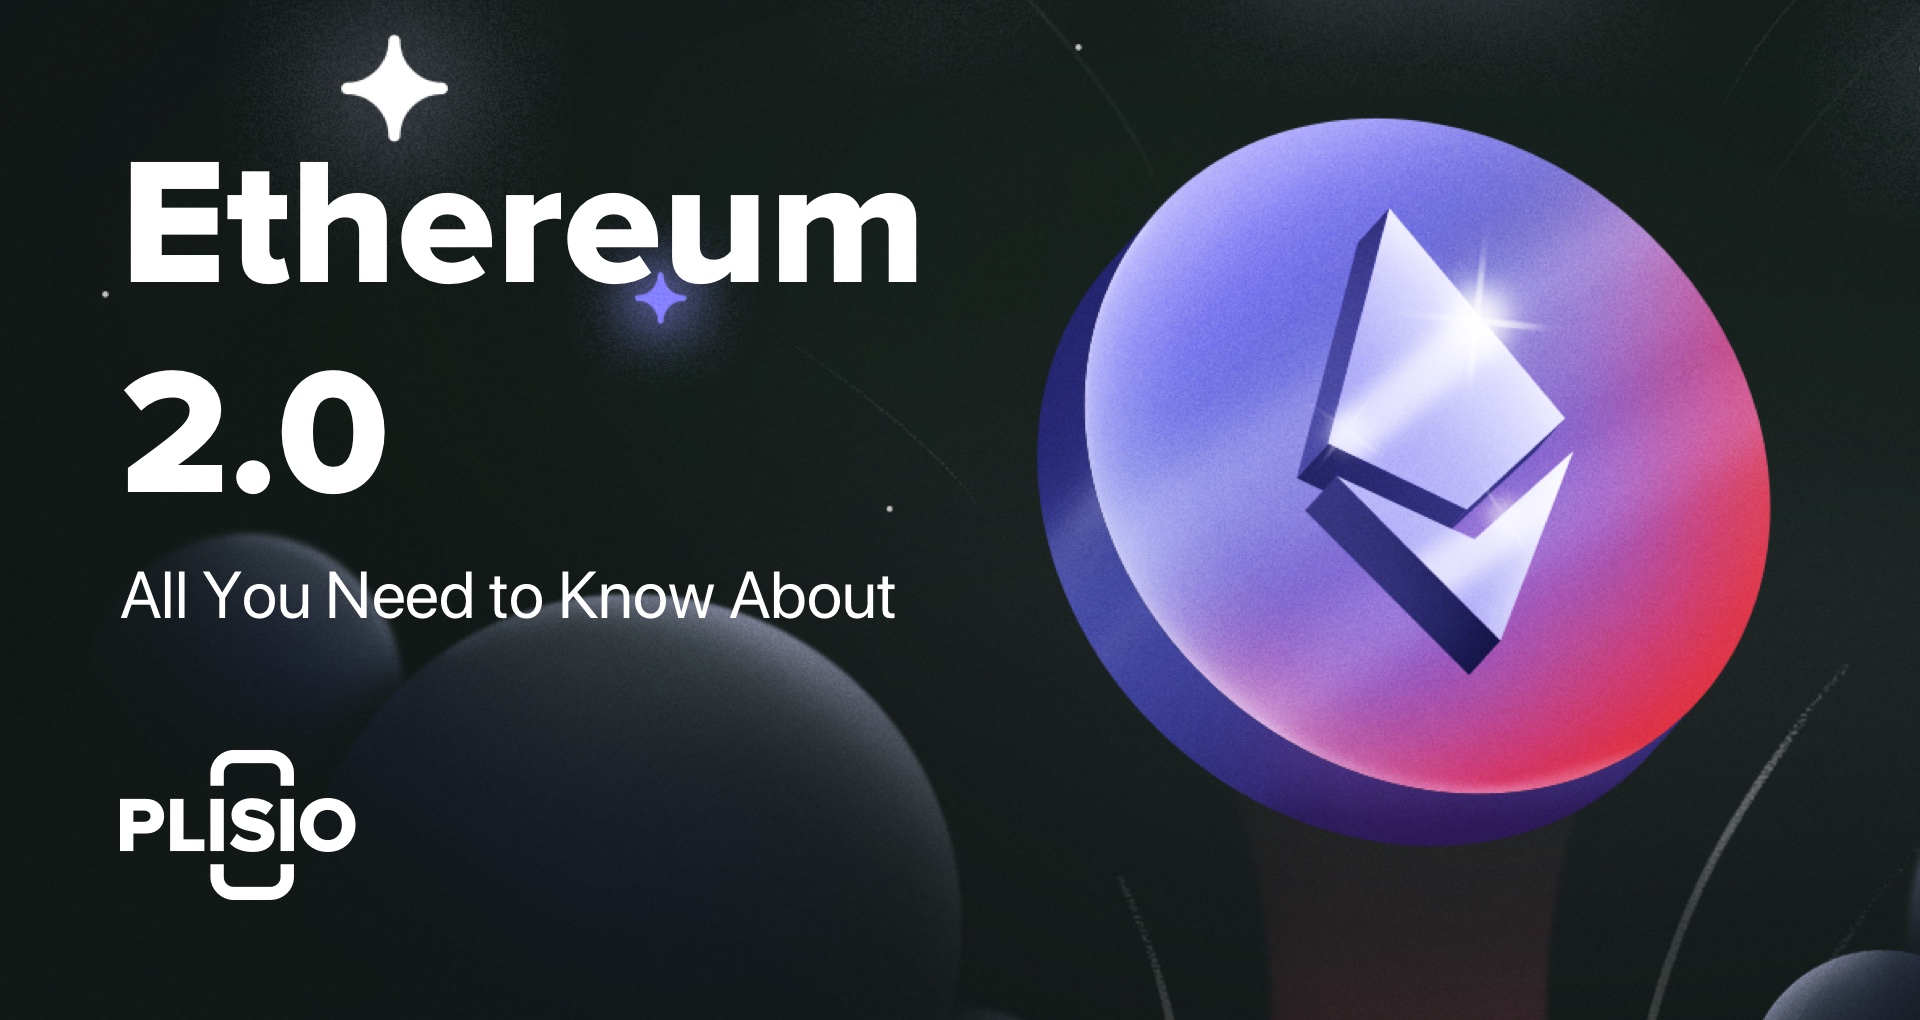 كل ما تحتاج لمعرفته حول Ethereum 2.0